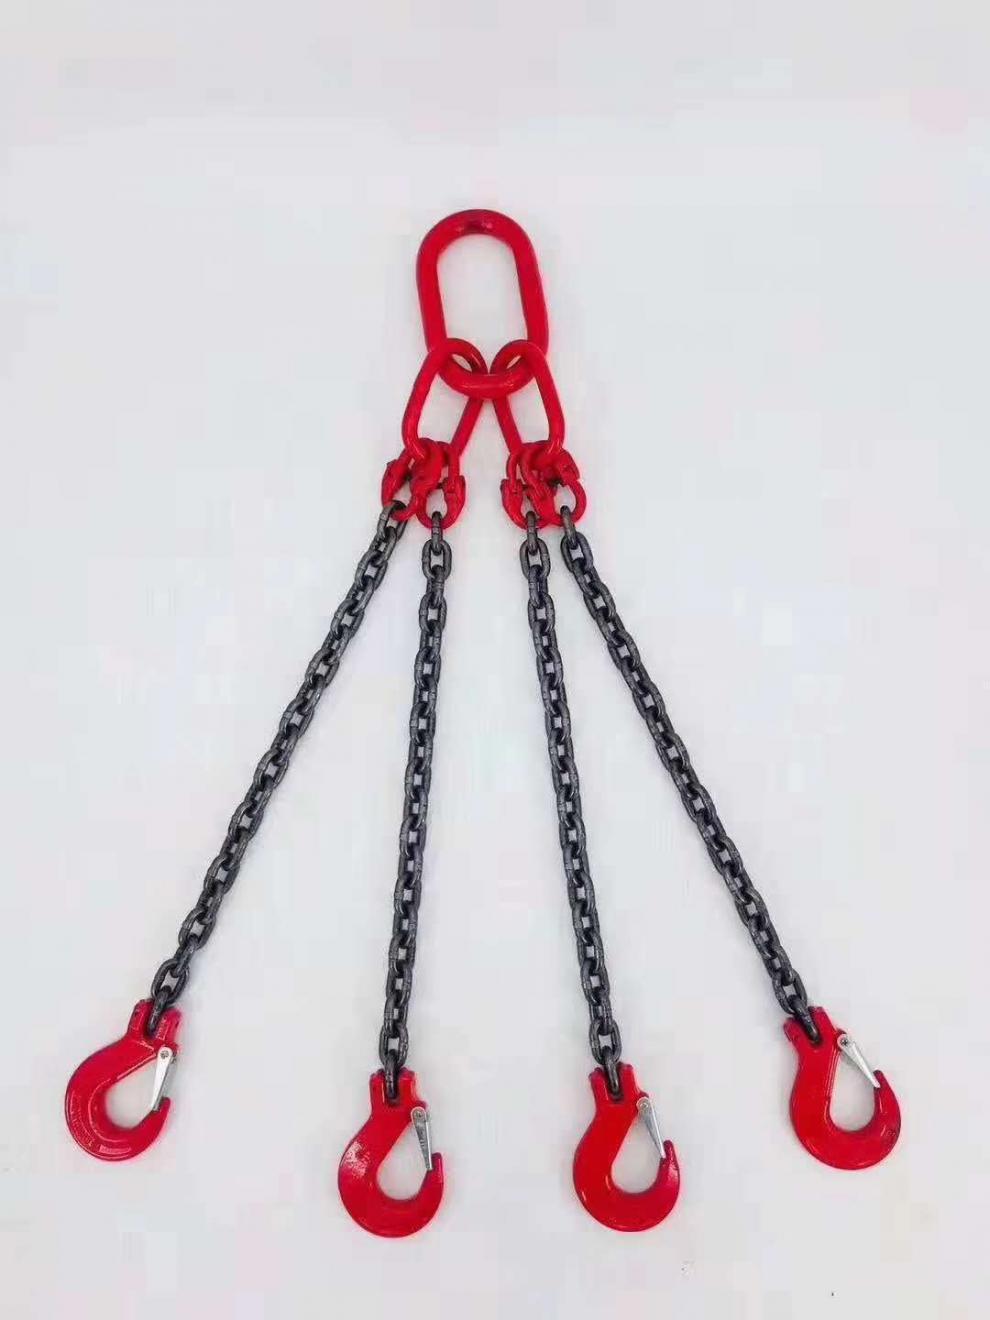 吊具链条勾 起重链条吊索具 吊装工具铁链子扣勾起重工具吊具挂钩吊装